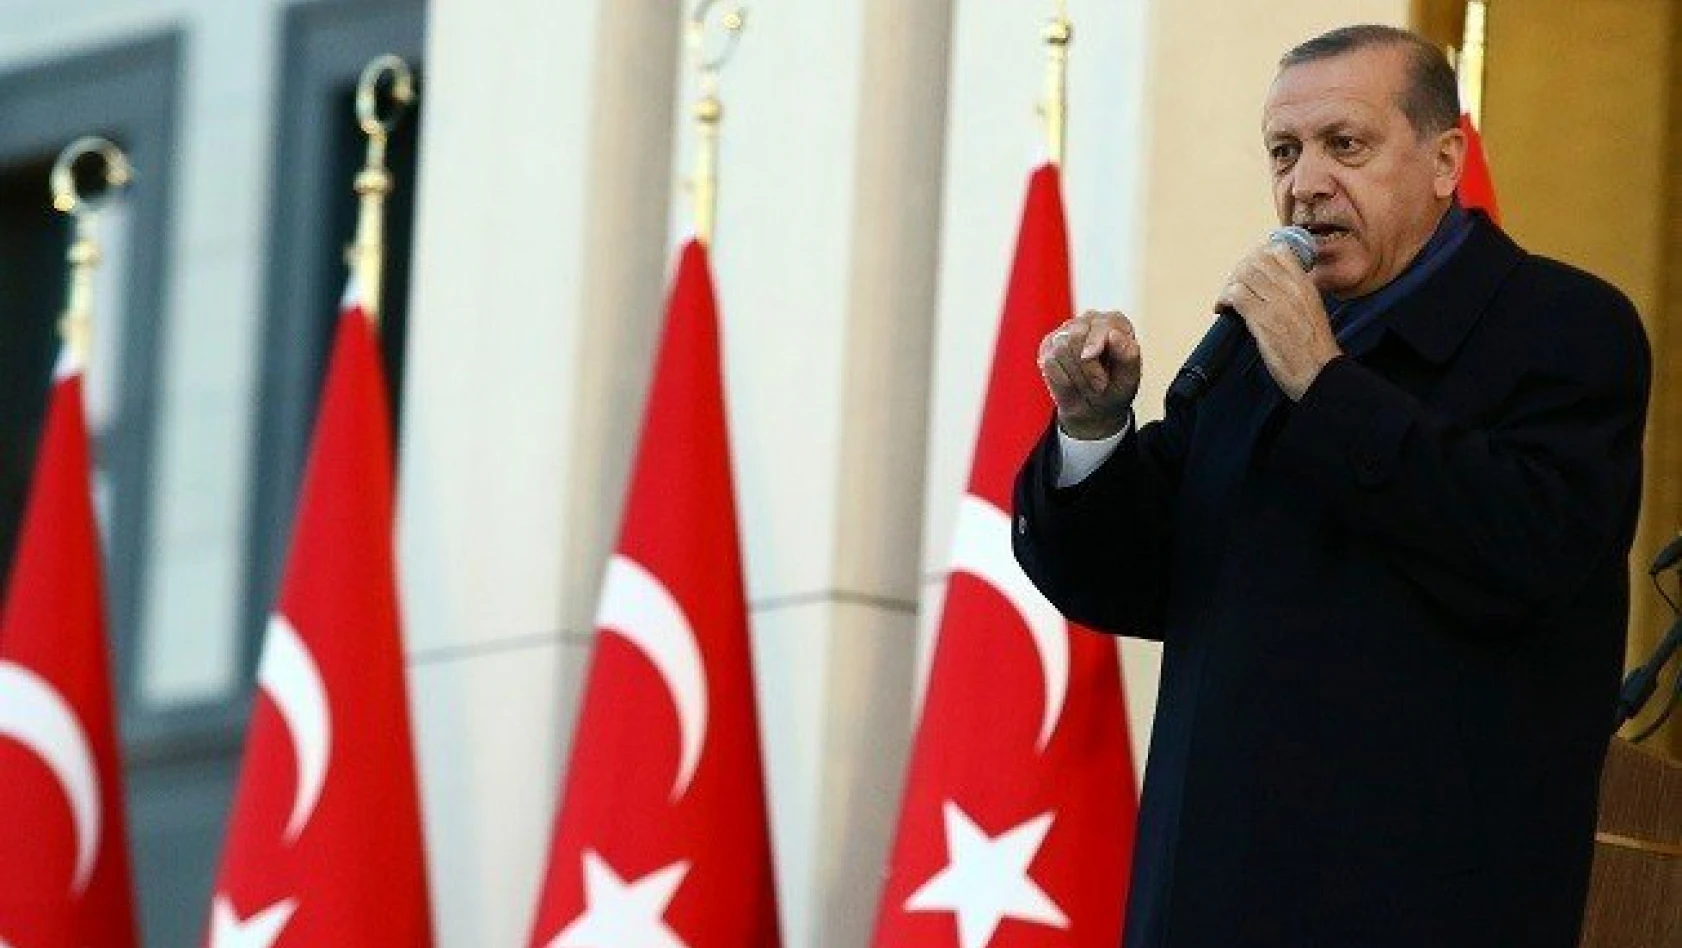 Cumhurbaşkanı Erdoğan'dan flaş &quotidam" açıklaması 